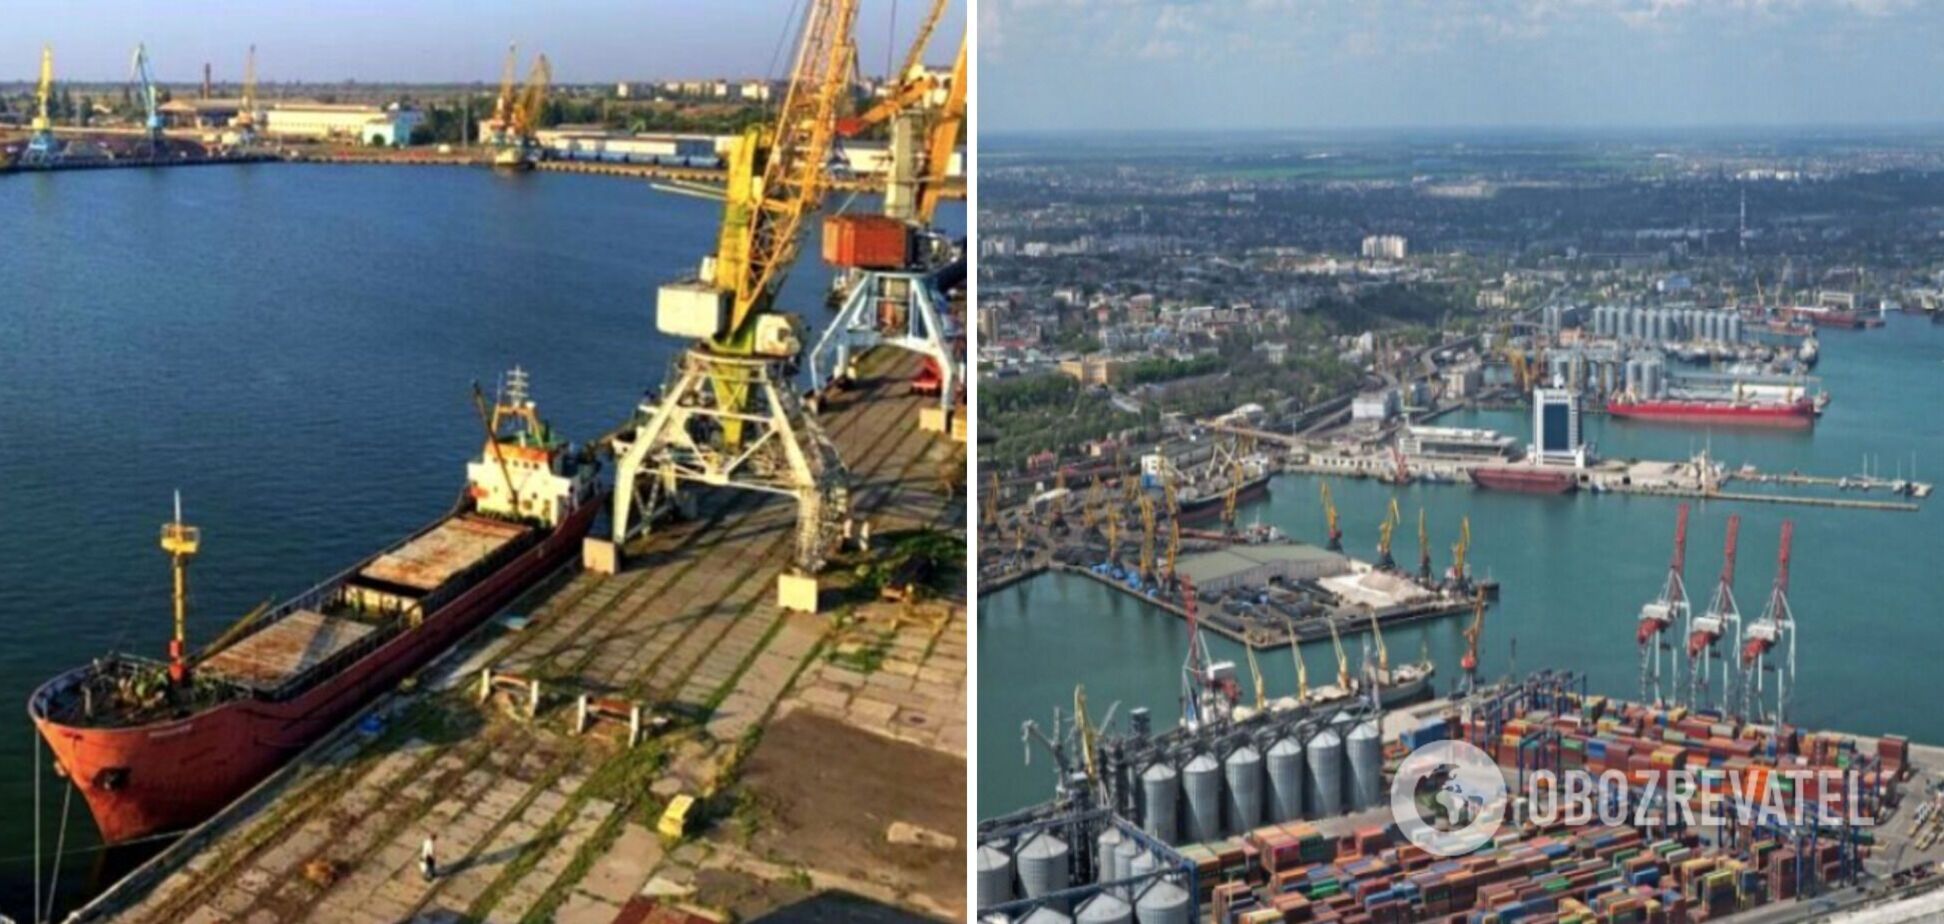 Разблокировка портов существенно улучшит торговый баланс и обороноспособность Украины, – Головко